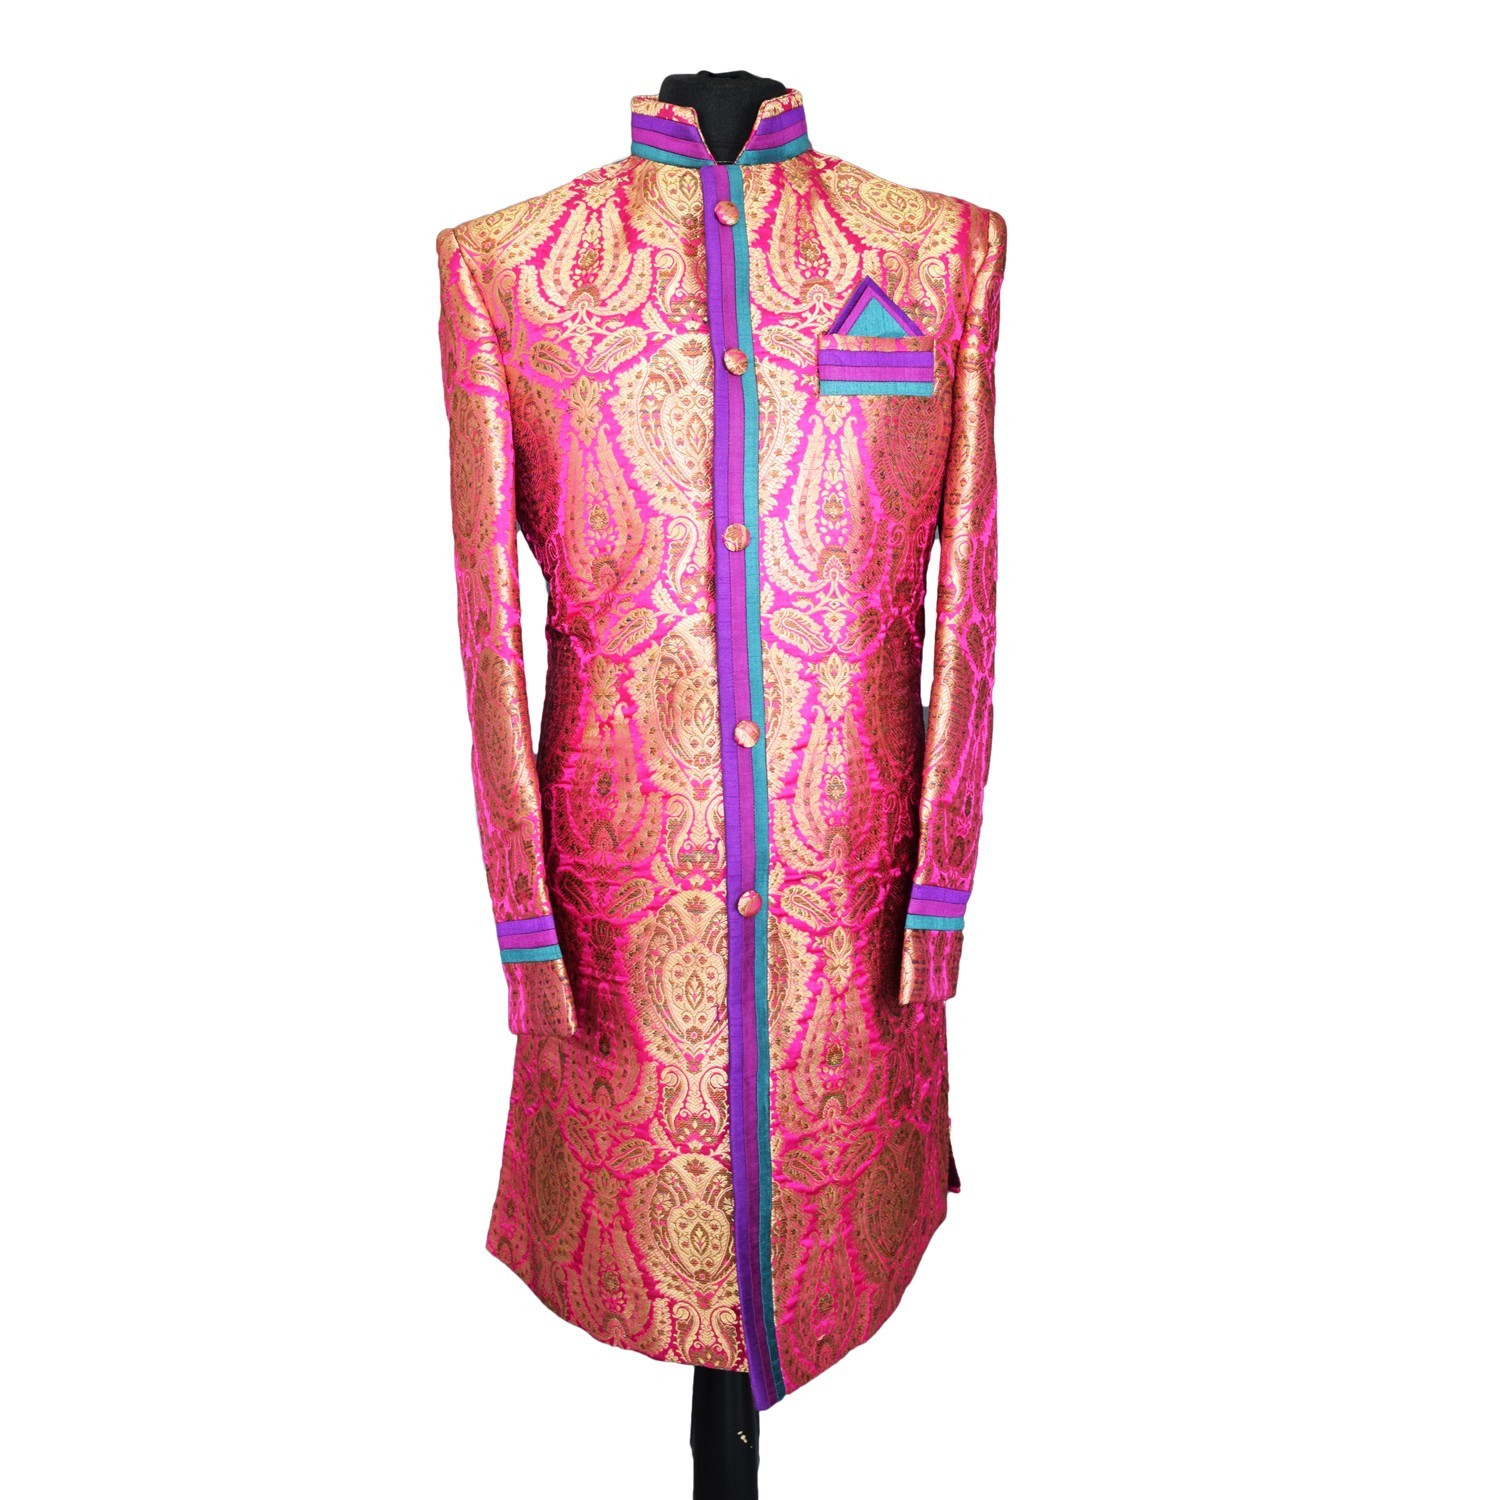 Indian Men’s Elegant Classic Pink Sherwani Wedding Outfit